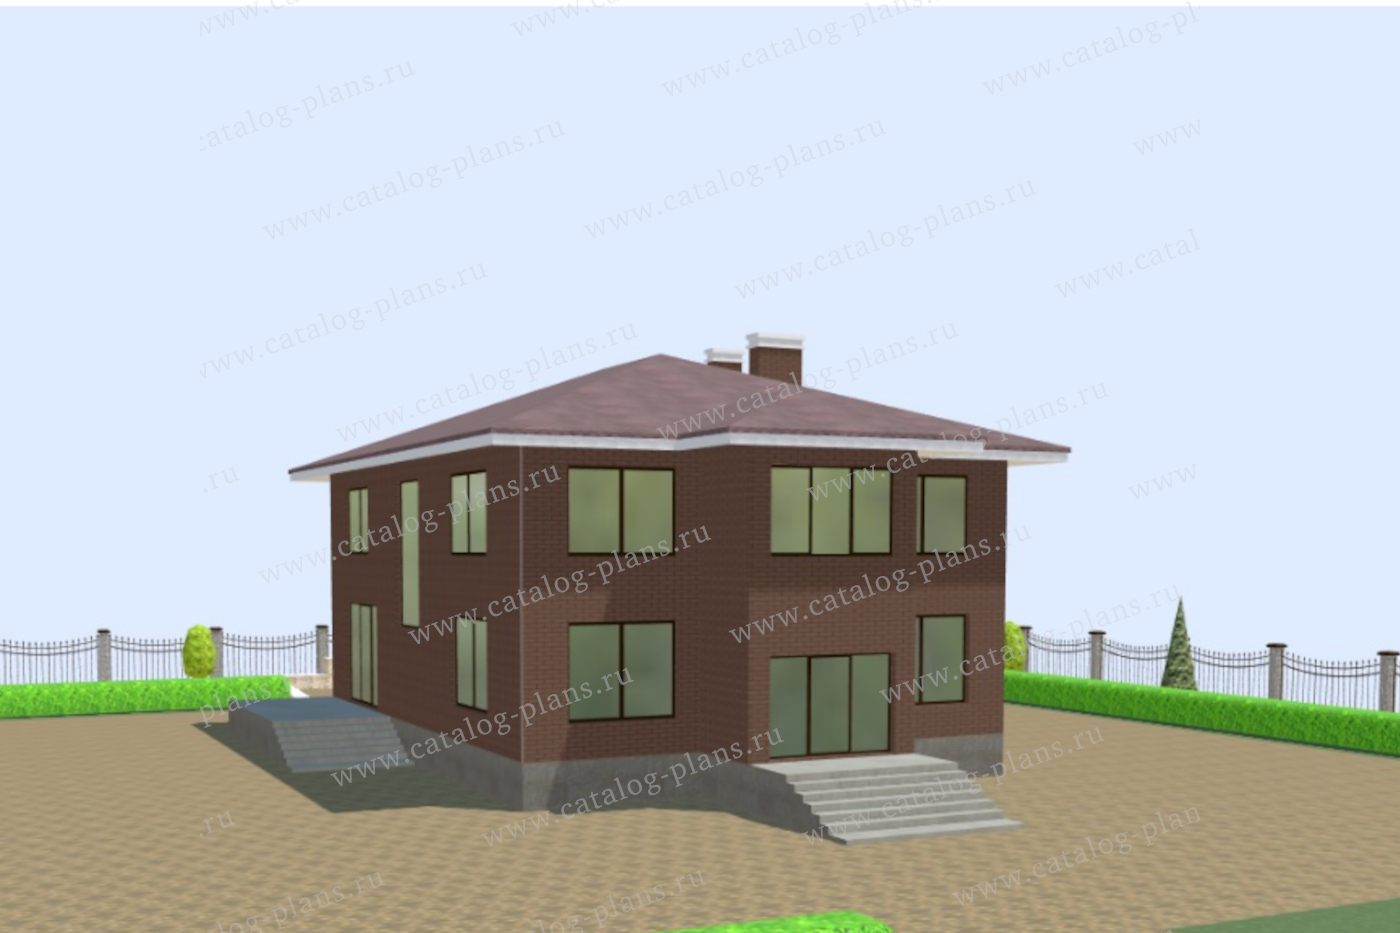 Проект 40-45BDK2L, жилой дом, материал - поризованный керамический блок 440, количество этажей - 2, архитектурный стиль - минимализм, фундамент - свайно-ростверковый ж/б